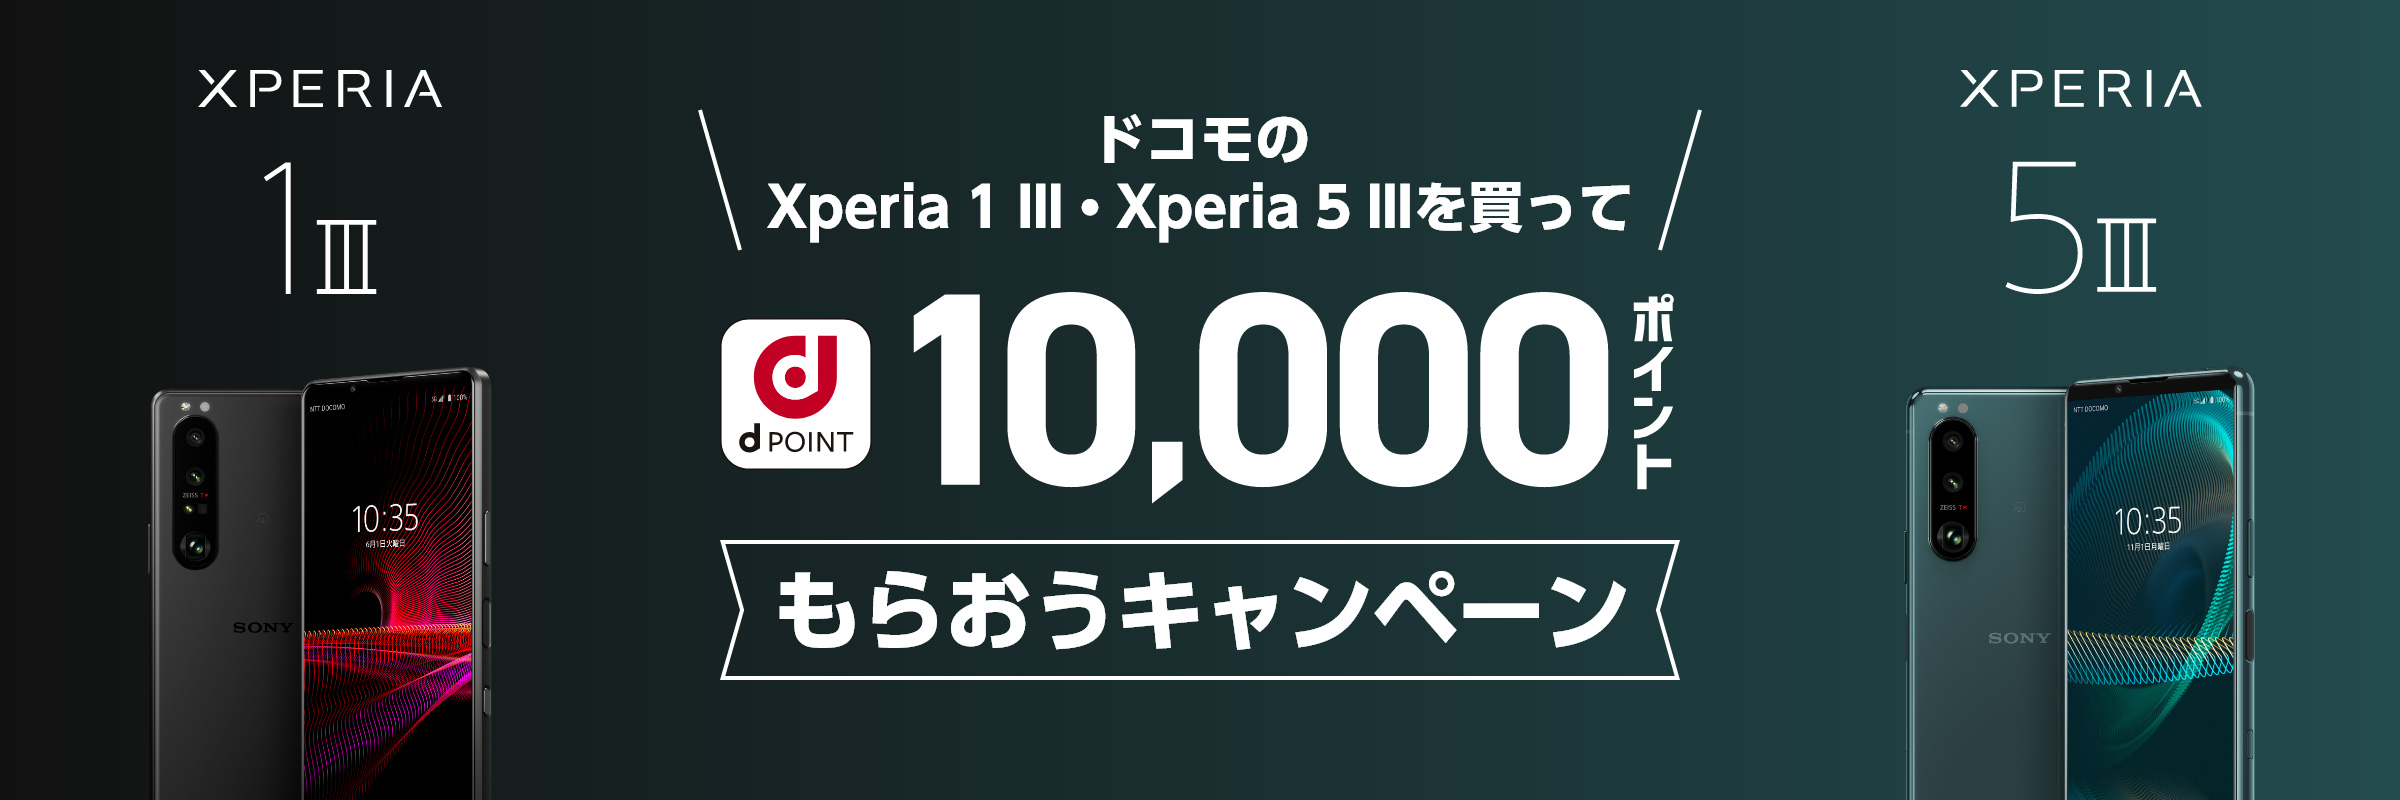 ドコモのXperia 1 III・Xperia 5 III を買ってdポイント10,000ポイントをもらおうキャンペーン